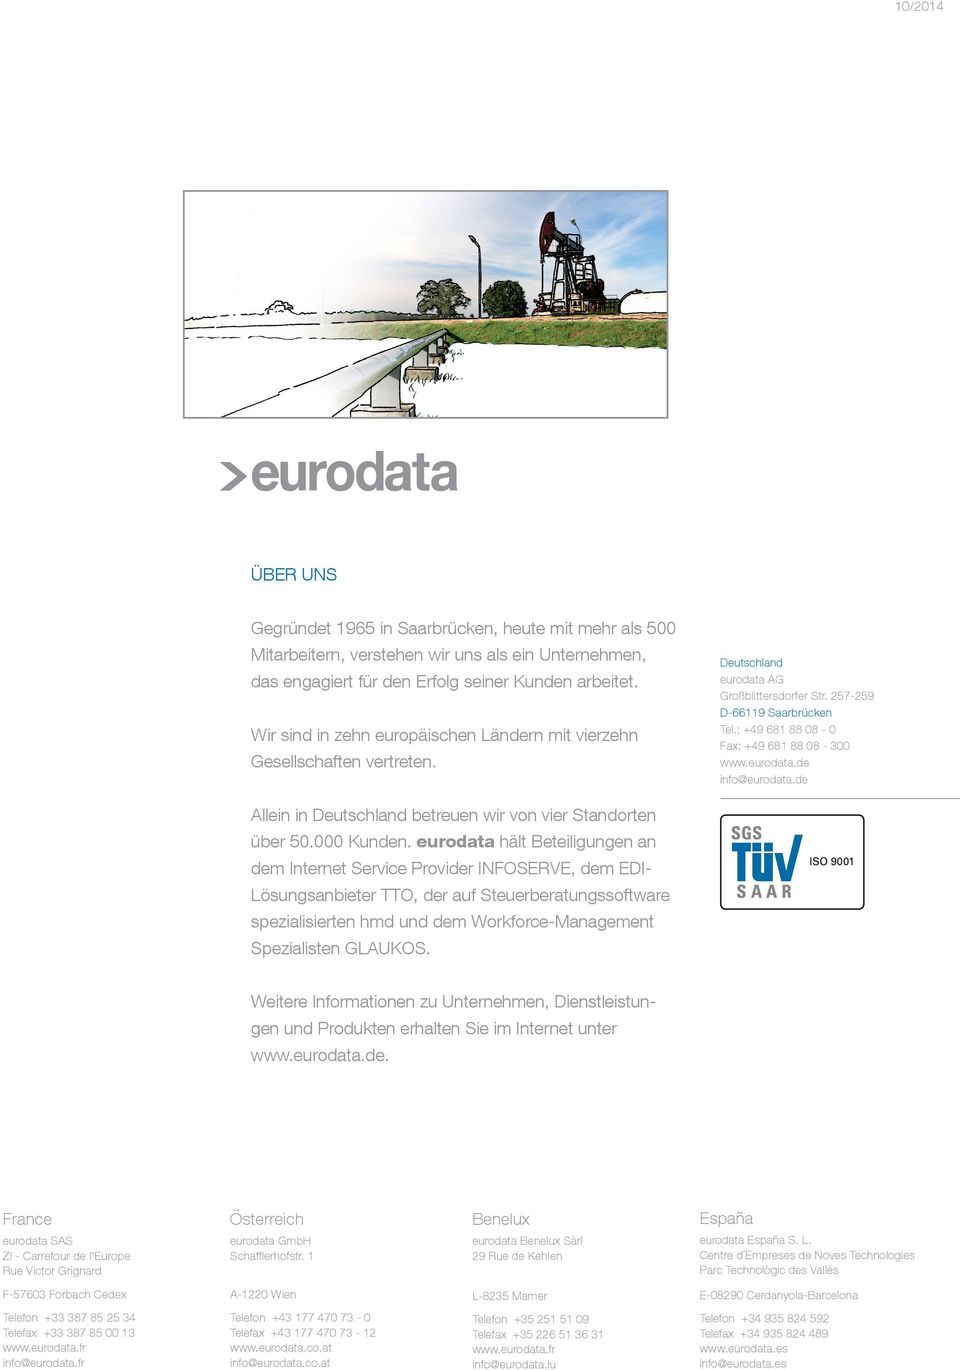 : +49 681 88 08-0 Fax: +49 681 88 08-300 www.eurodata.de info@eurodata.de Allein in Deutschland betreuen wir von vier Standorten über 50.000 Kunden.